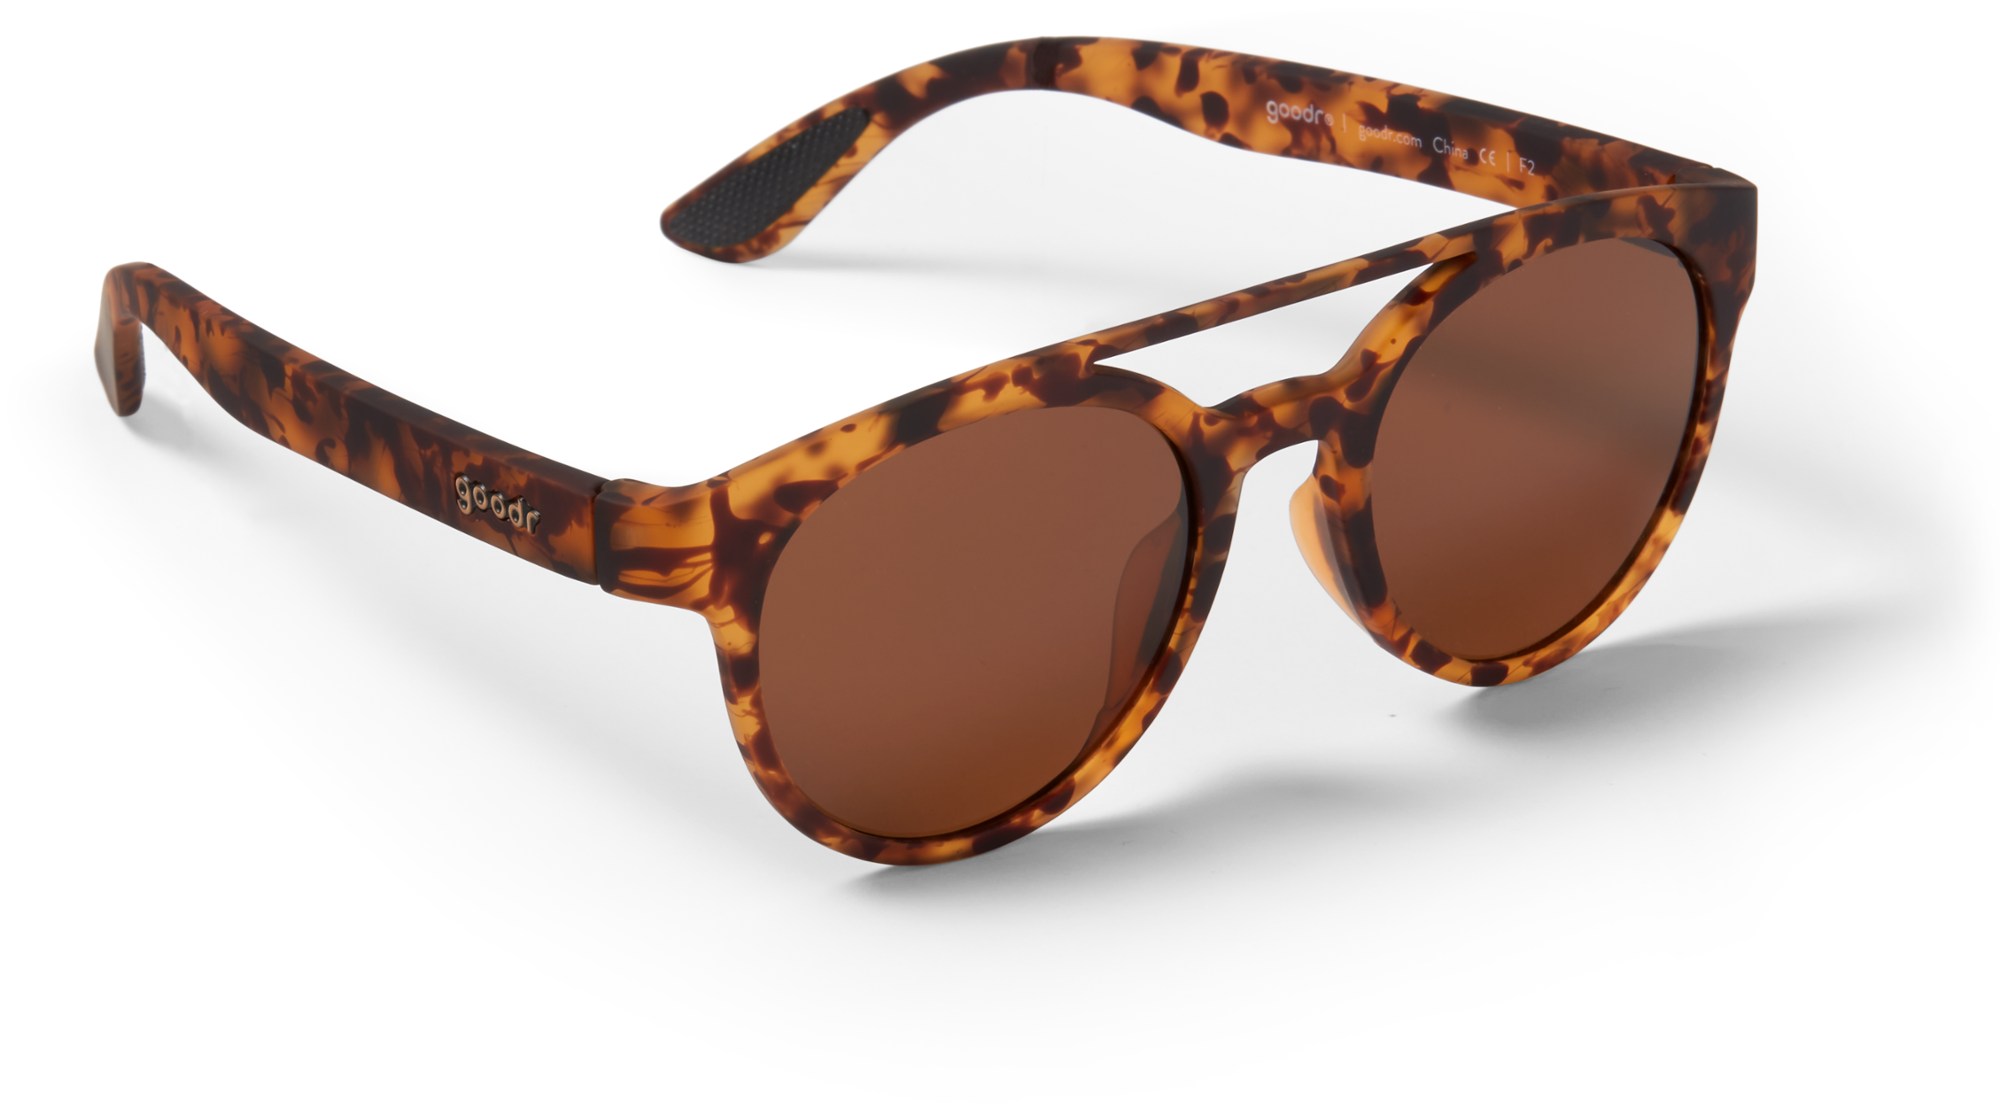 цена Поляризационные солнцезащитные очки PHG goodr, коричневый